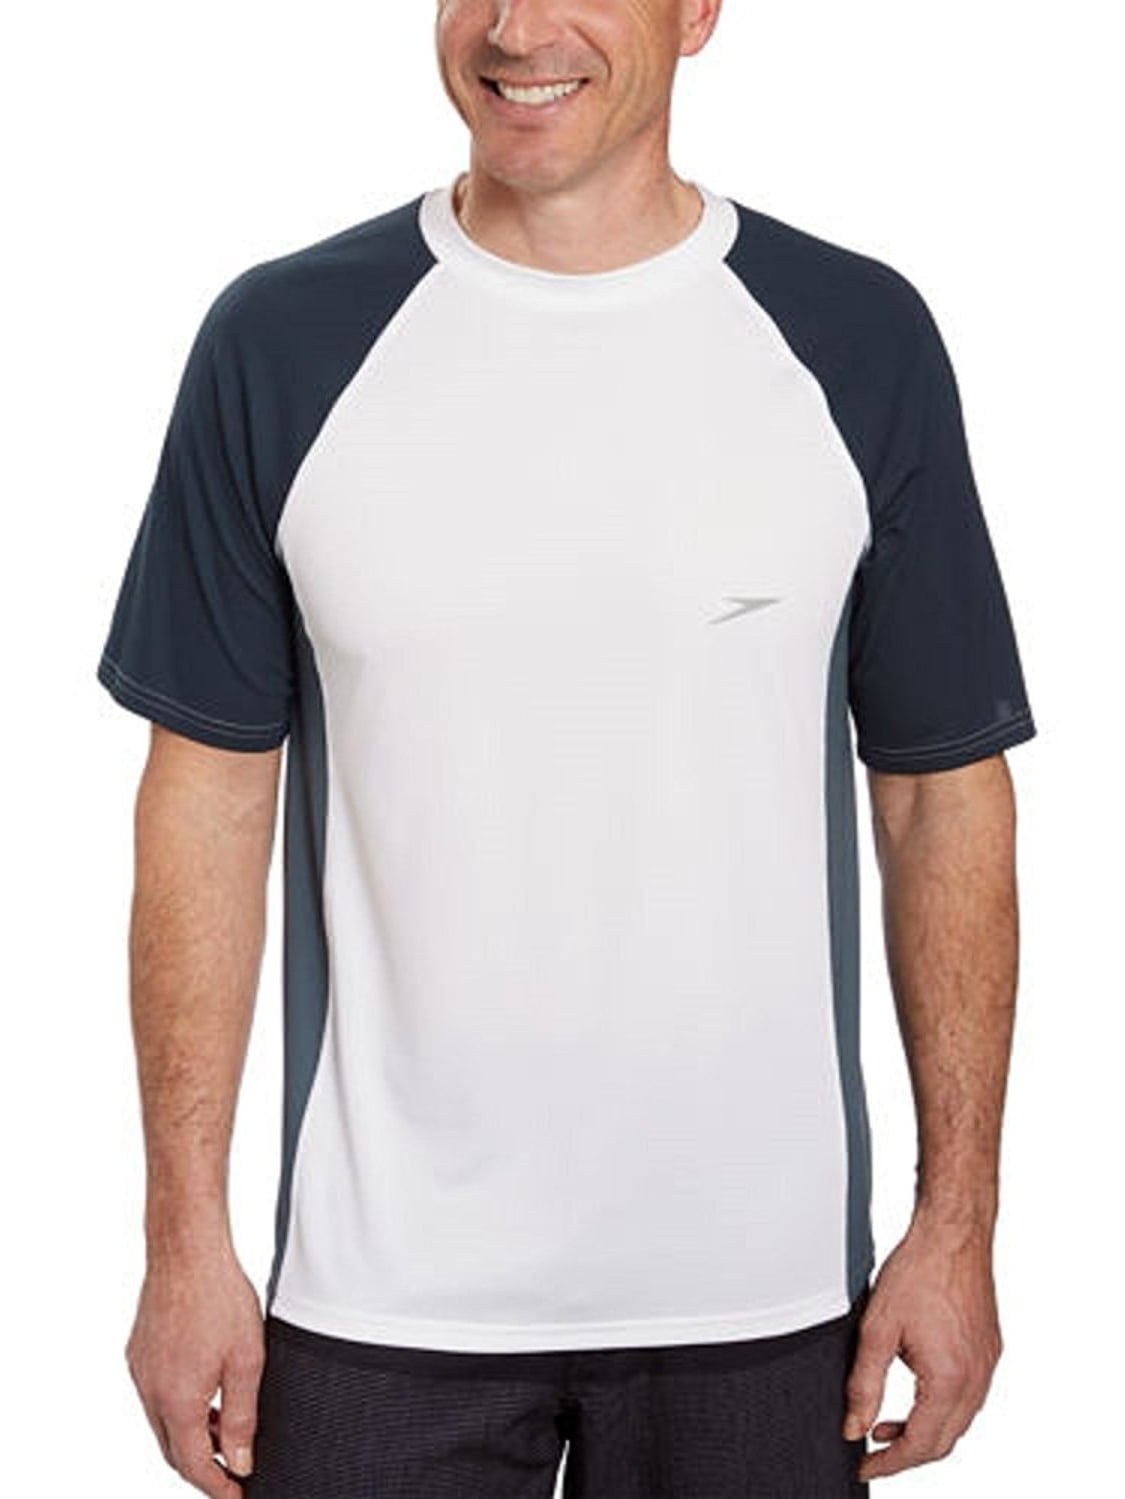 Speedo Mens UPF 50 Longview Short-Sleeve Rashguard Swim T-Shirt